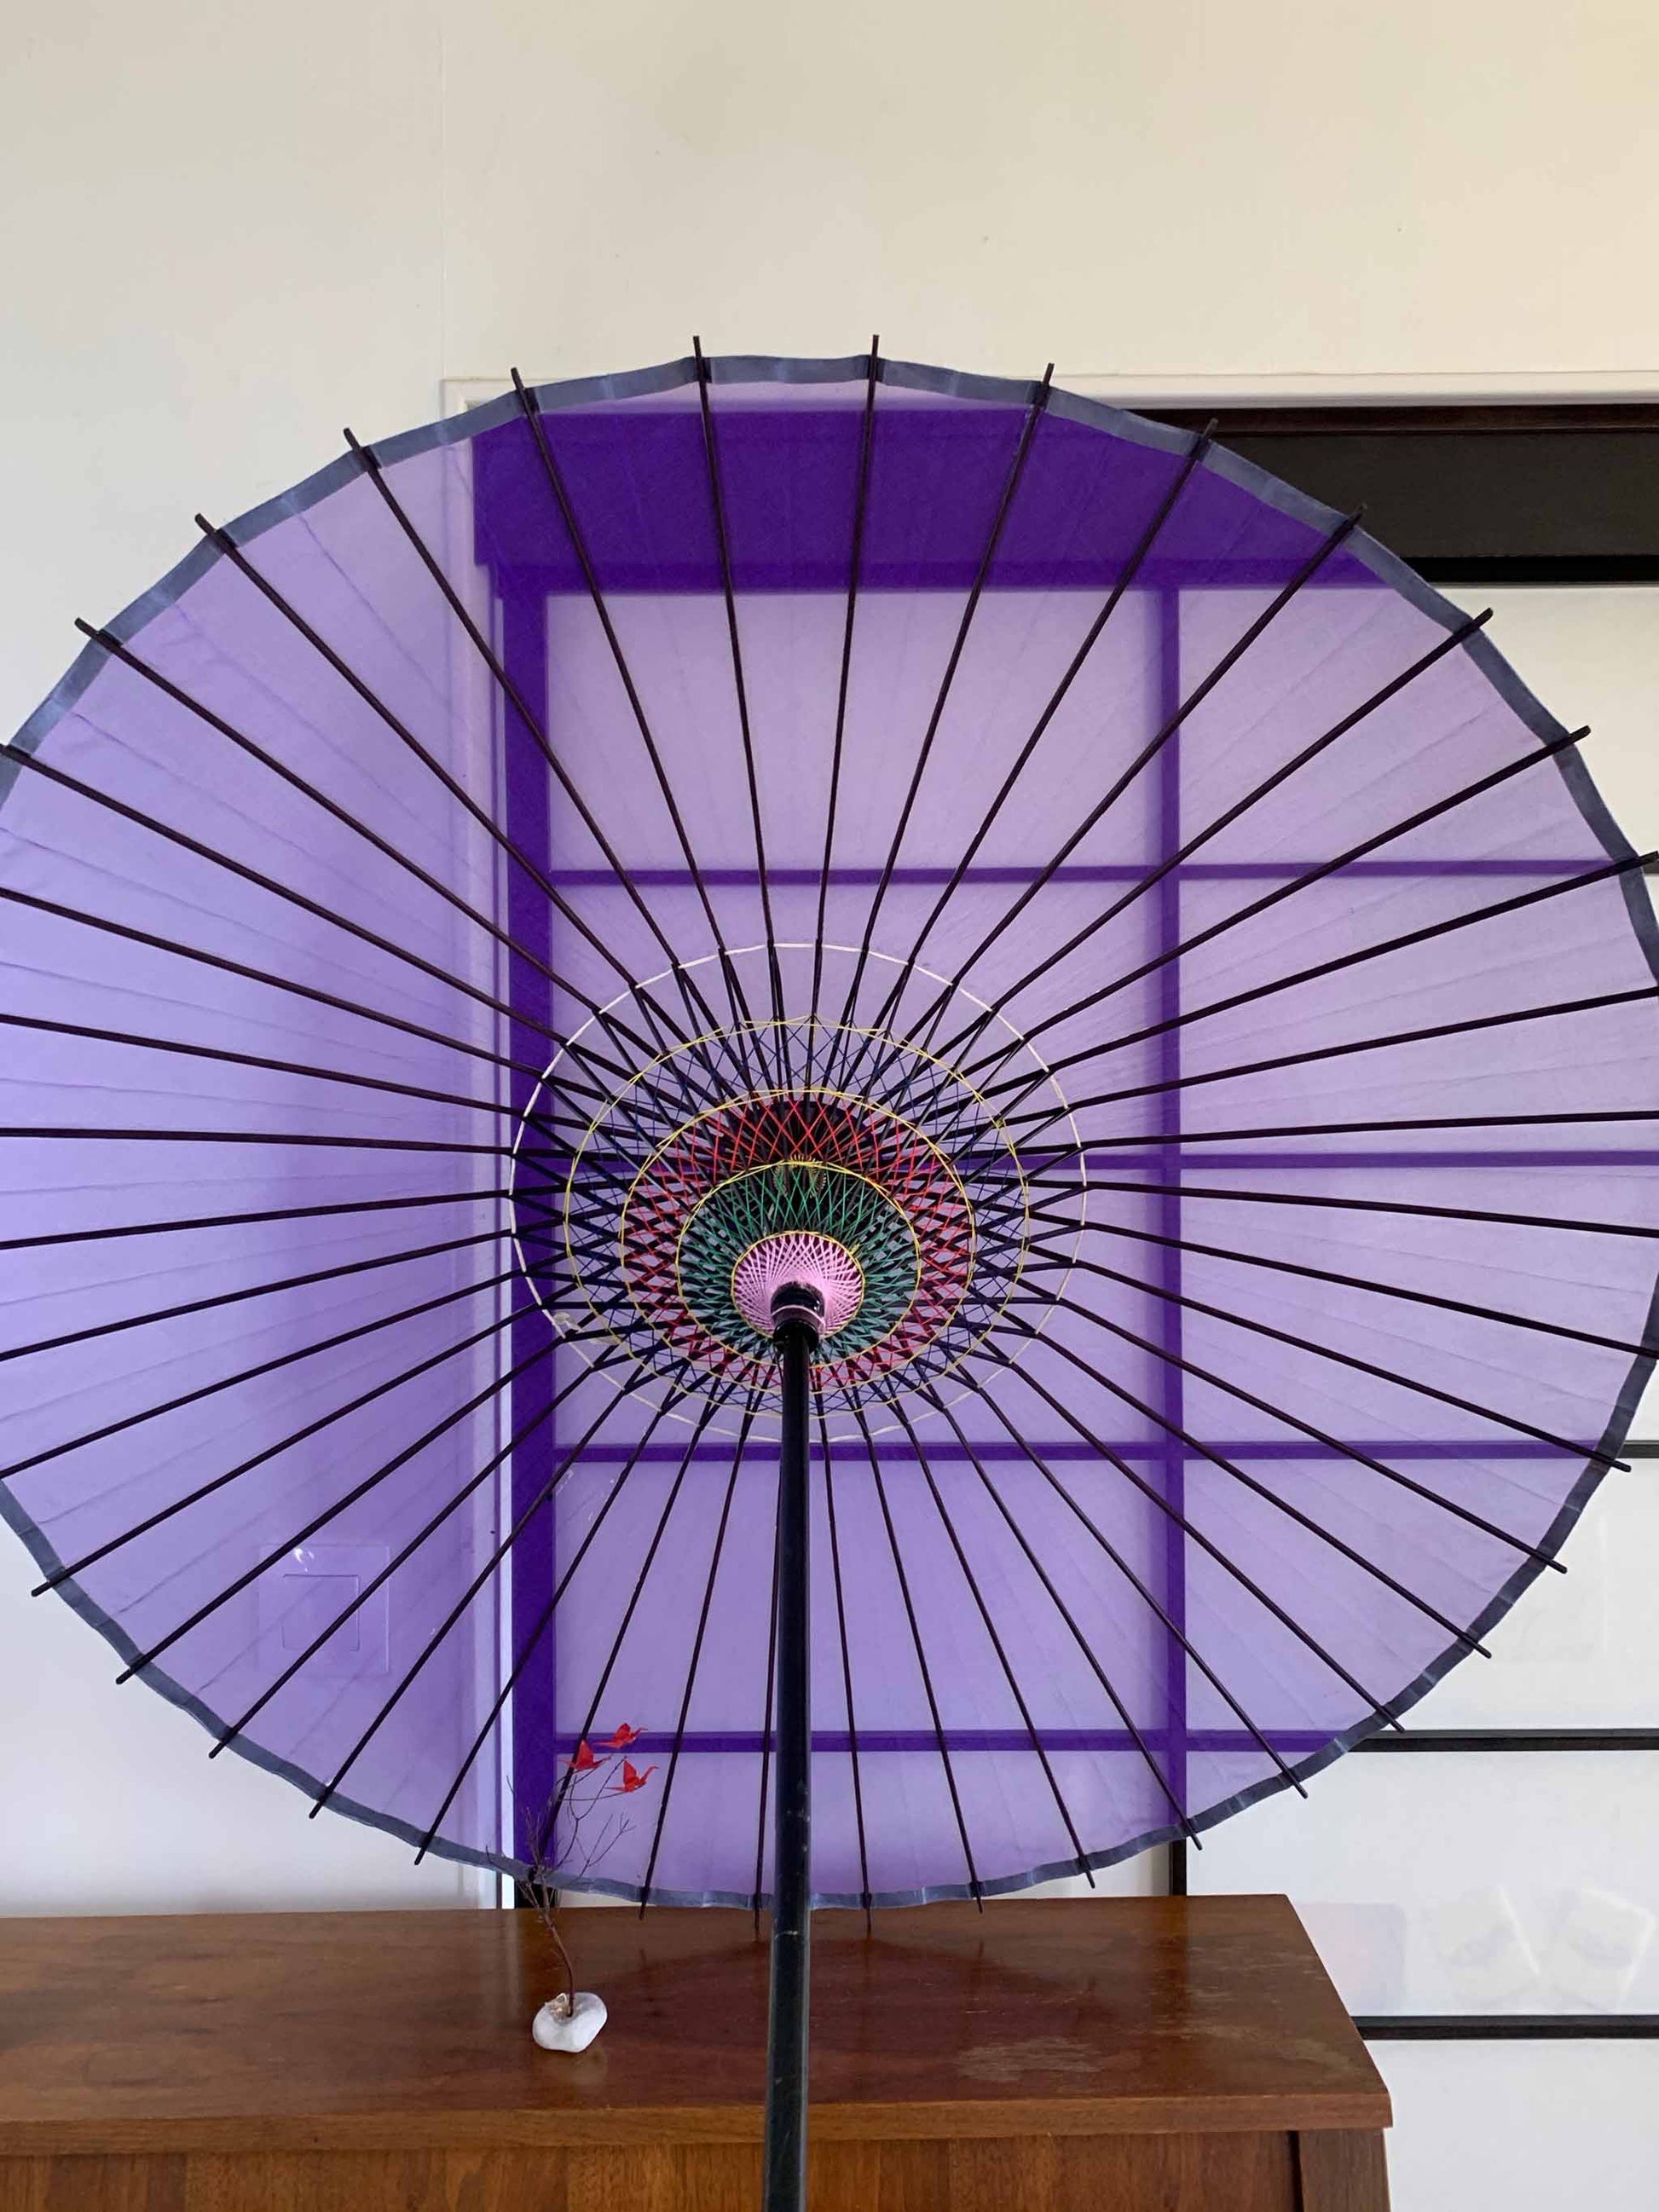 Parapluie traditionnel japonais kyowagasa violet.